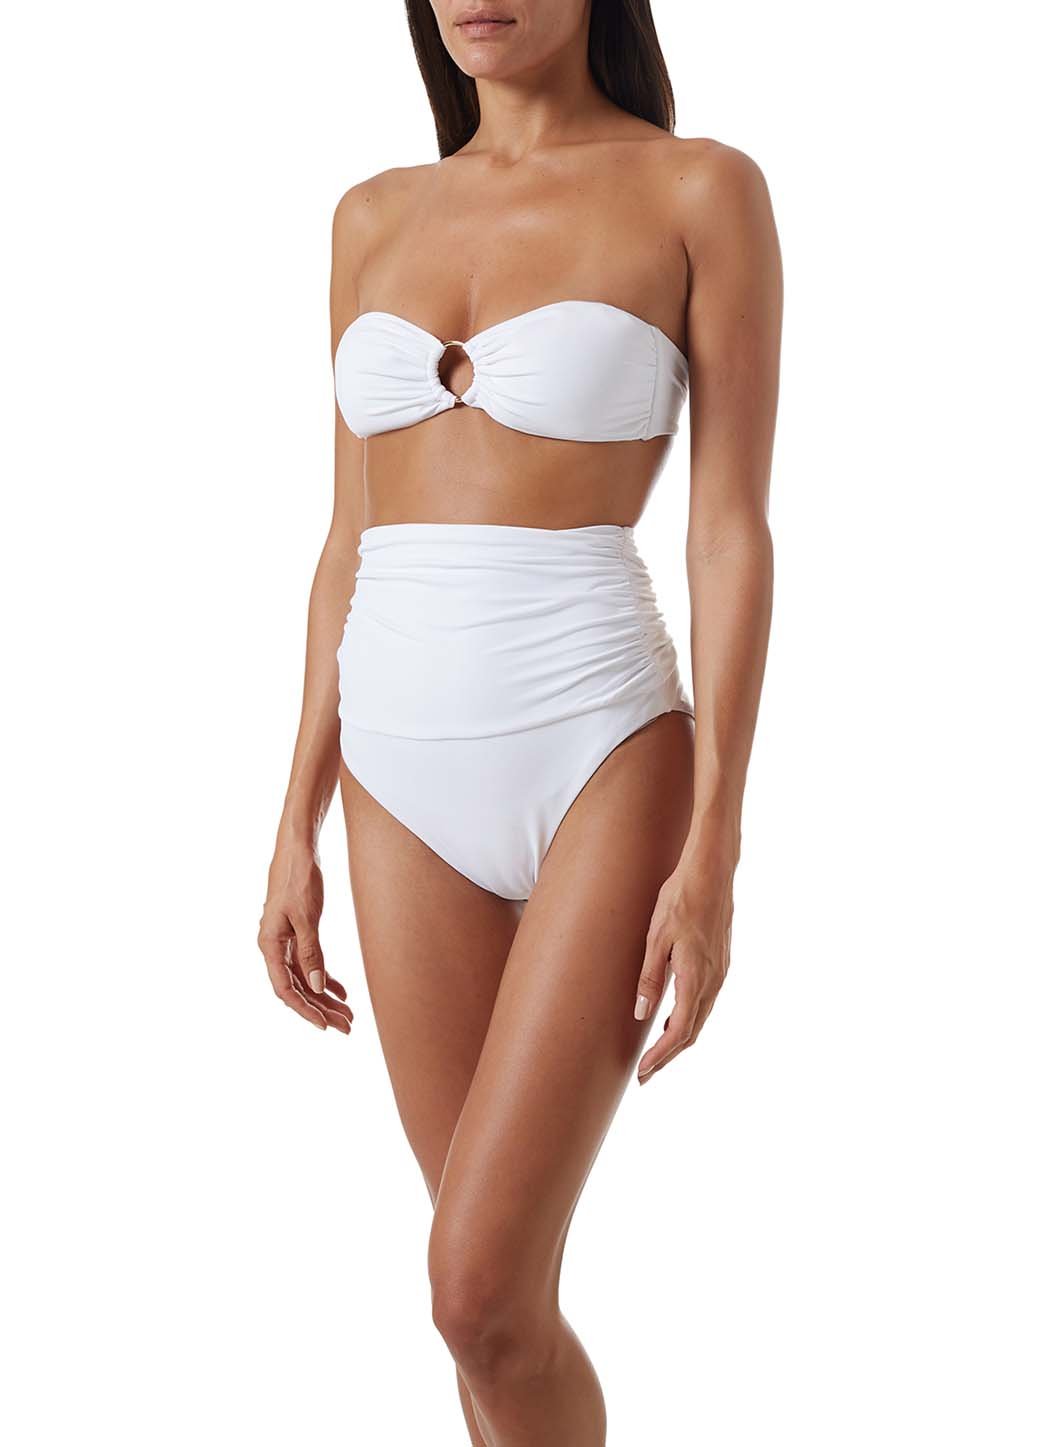 ancona-white-high-waisted-bandeau-bikini-model_F